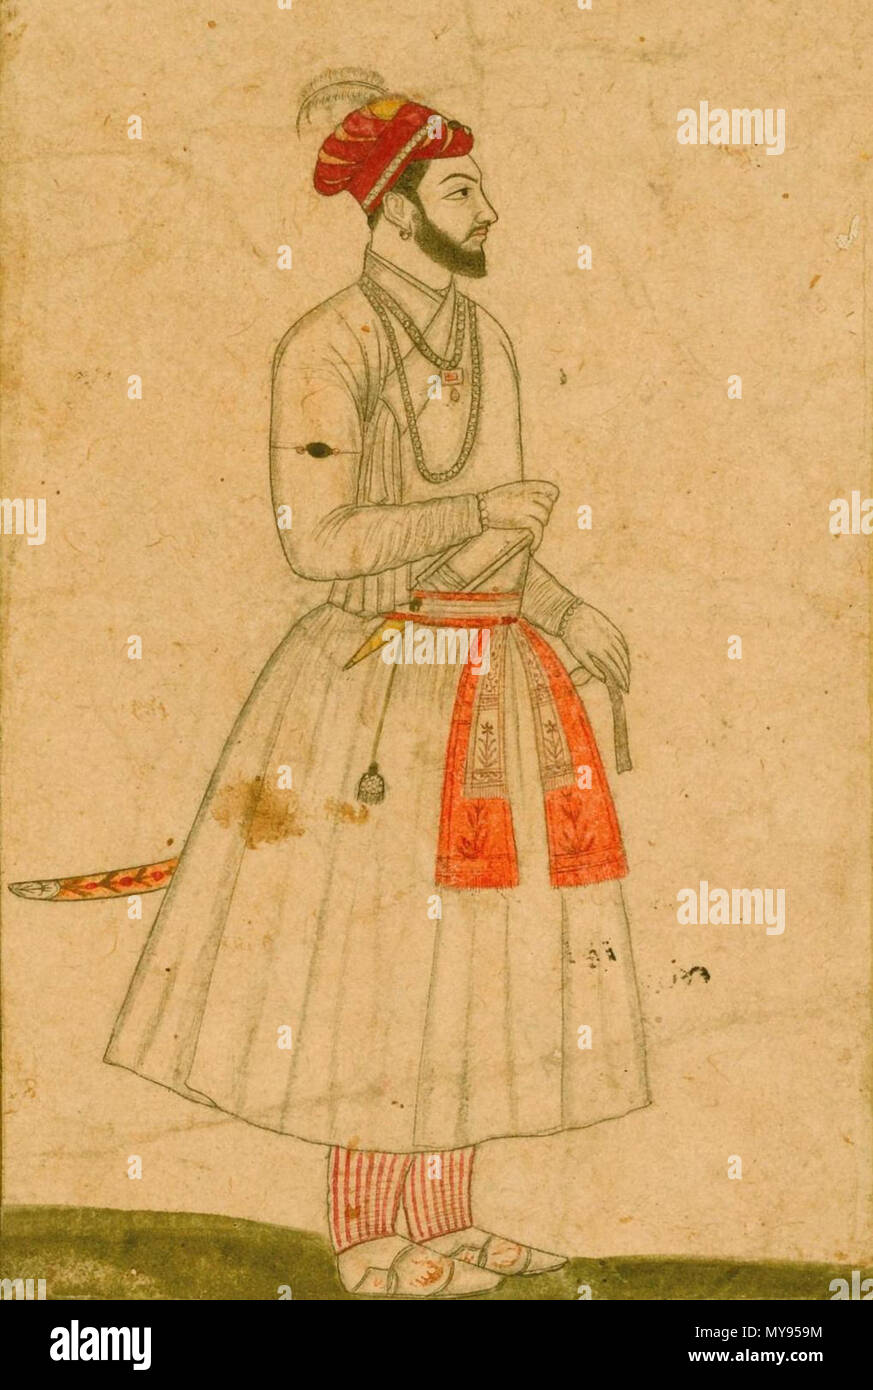 . Englisch: ein Porträt des Prinzen kam Baksh, der Sohn Aurangzeb, Indien, Mughal, 18. Jahrhundert Schätzung: 500 - 800 GBP VIEL VERKAUFT. 2.750 GBP (Hammer Preis bei Käuferprovision) Tinte mit Verwendung von Farben auf Papier, auf dem Album Seite mit gold-Blau gesprenkelt Grenzen, in den unteren Rand und auf der Rückseite in Schwarz Tinte in nasta'liq Skript habihi Shahzadeh kam Bakhsh' Zeichnung bezeichnet: 18,6 10,4 cm. Blatt: 44,3 bis 28,6 cm. 18. Indien, Mughal, 18 ein Porträt des Prinzen kam Baksh, der Sohn Aurangzeb (7/8) Stockfoto